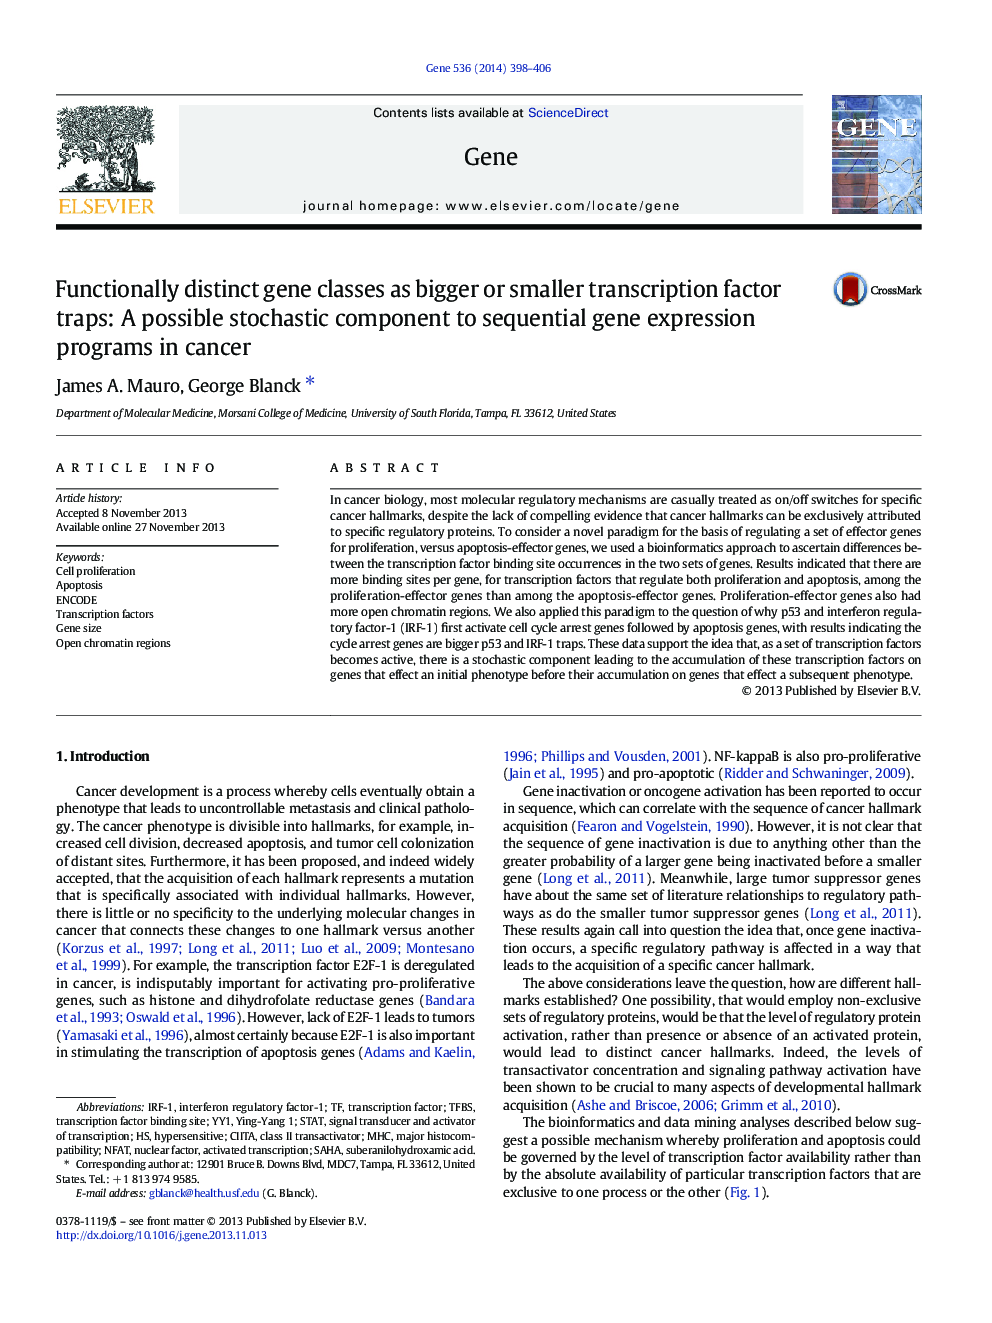 کلاس های ژن متمایز عملکردی به عنوان تله های فاکتور بزرگتر یا کوچکتر رونویسی: یکی از اجزاء احتمالی برنامه های ترشحی بیان ژن در سرطان 